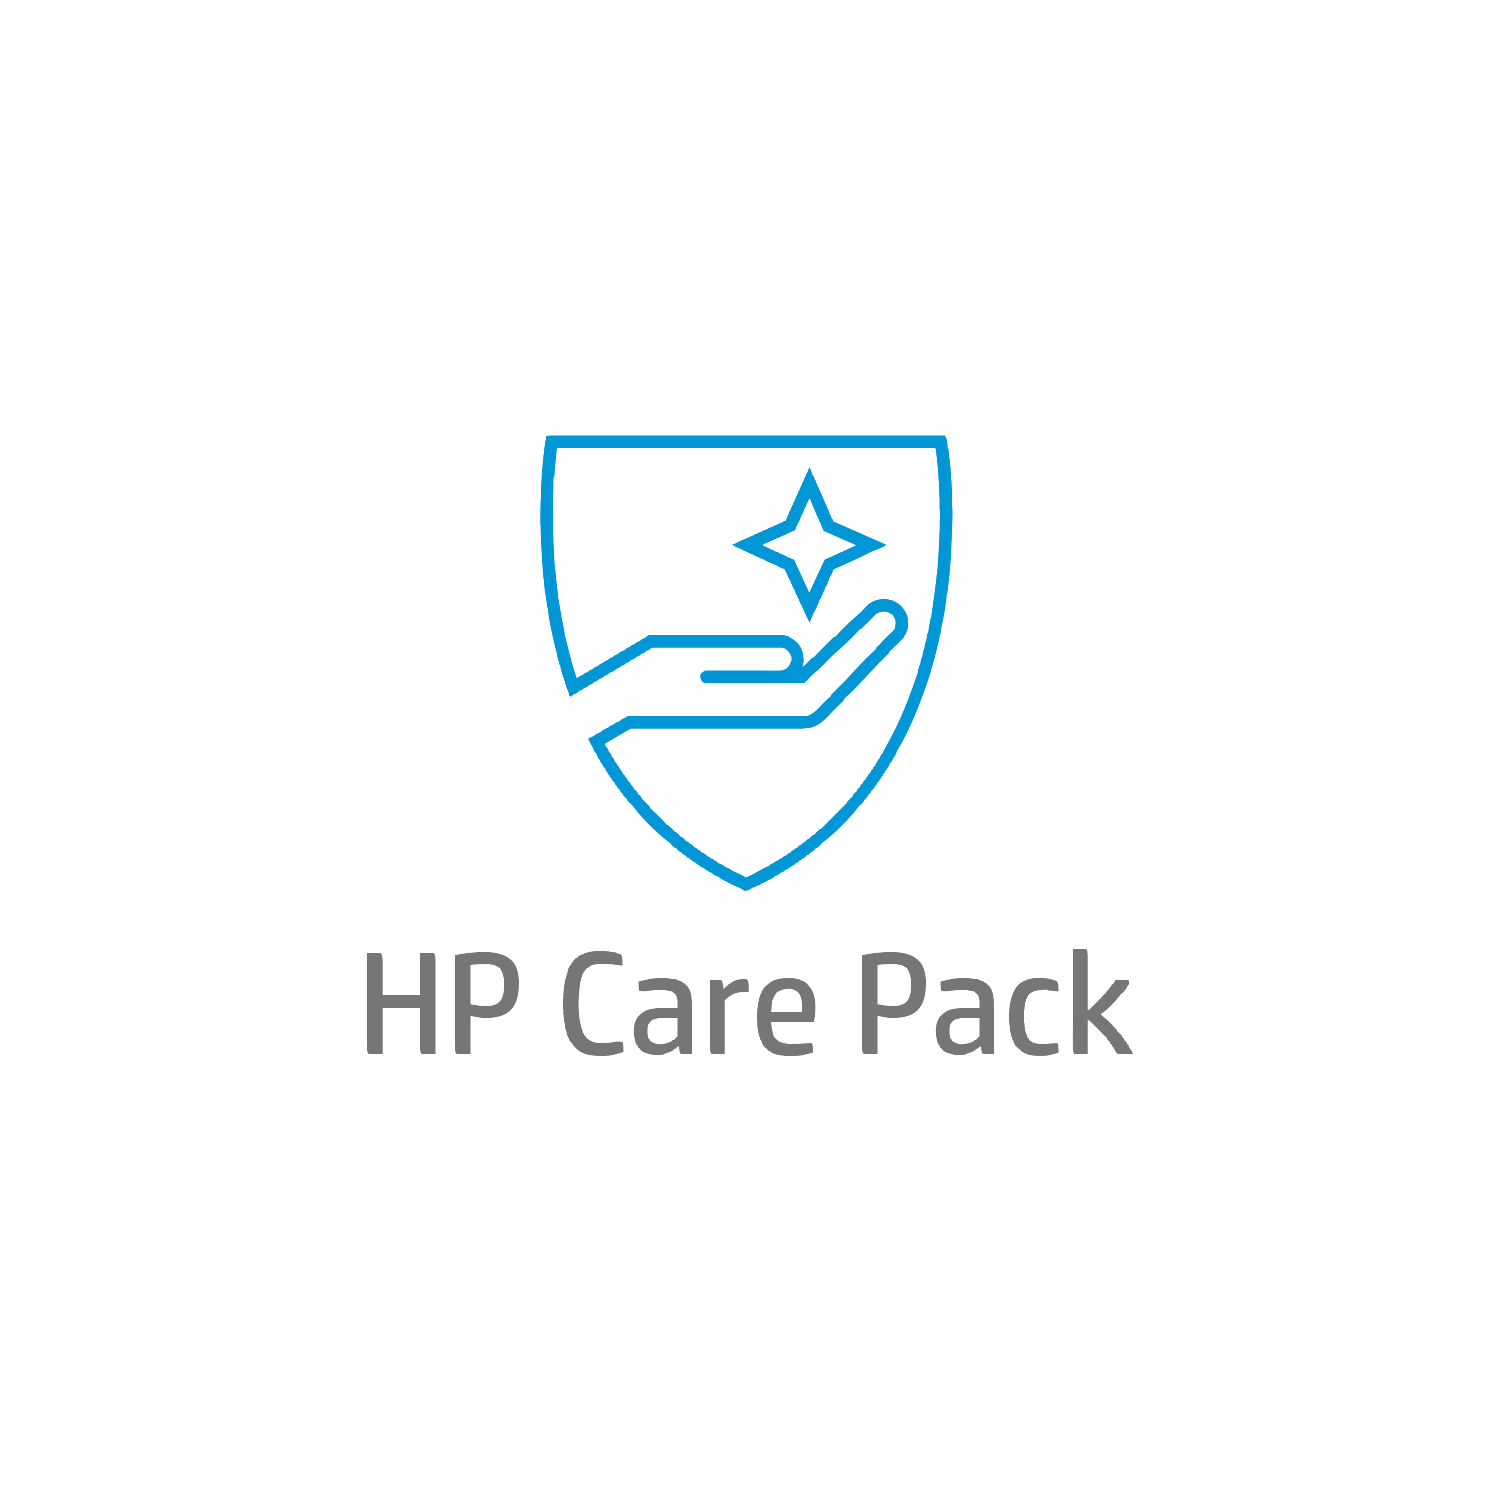 Bild von HP Care 1 Jahr PW Hardware-Support vor Ort für Mobile Workstations - Reparatur vor Ort - Vor Ort - Unter Garantie - Standardarbeitstage - 9 Stunden - 1 Jahr - Reparatur innerhalb von 3–7 Werktagen